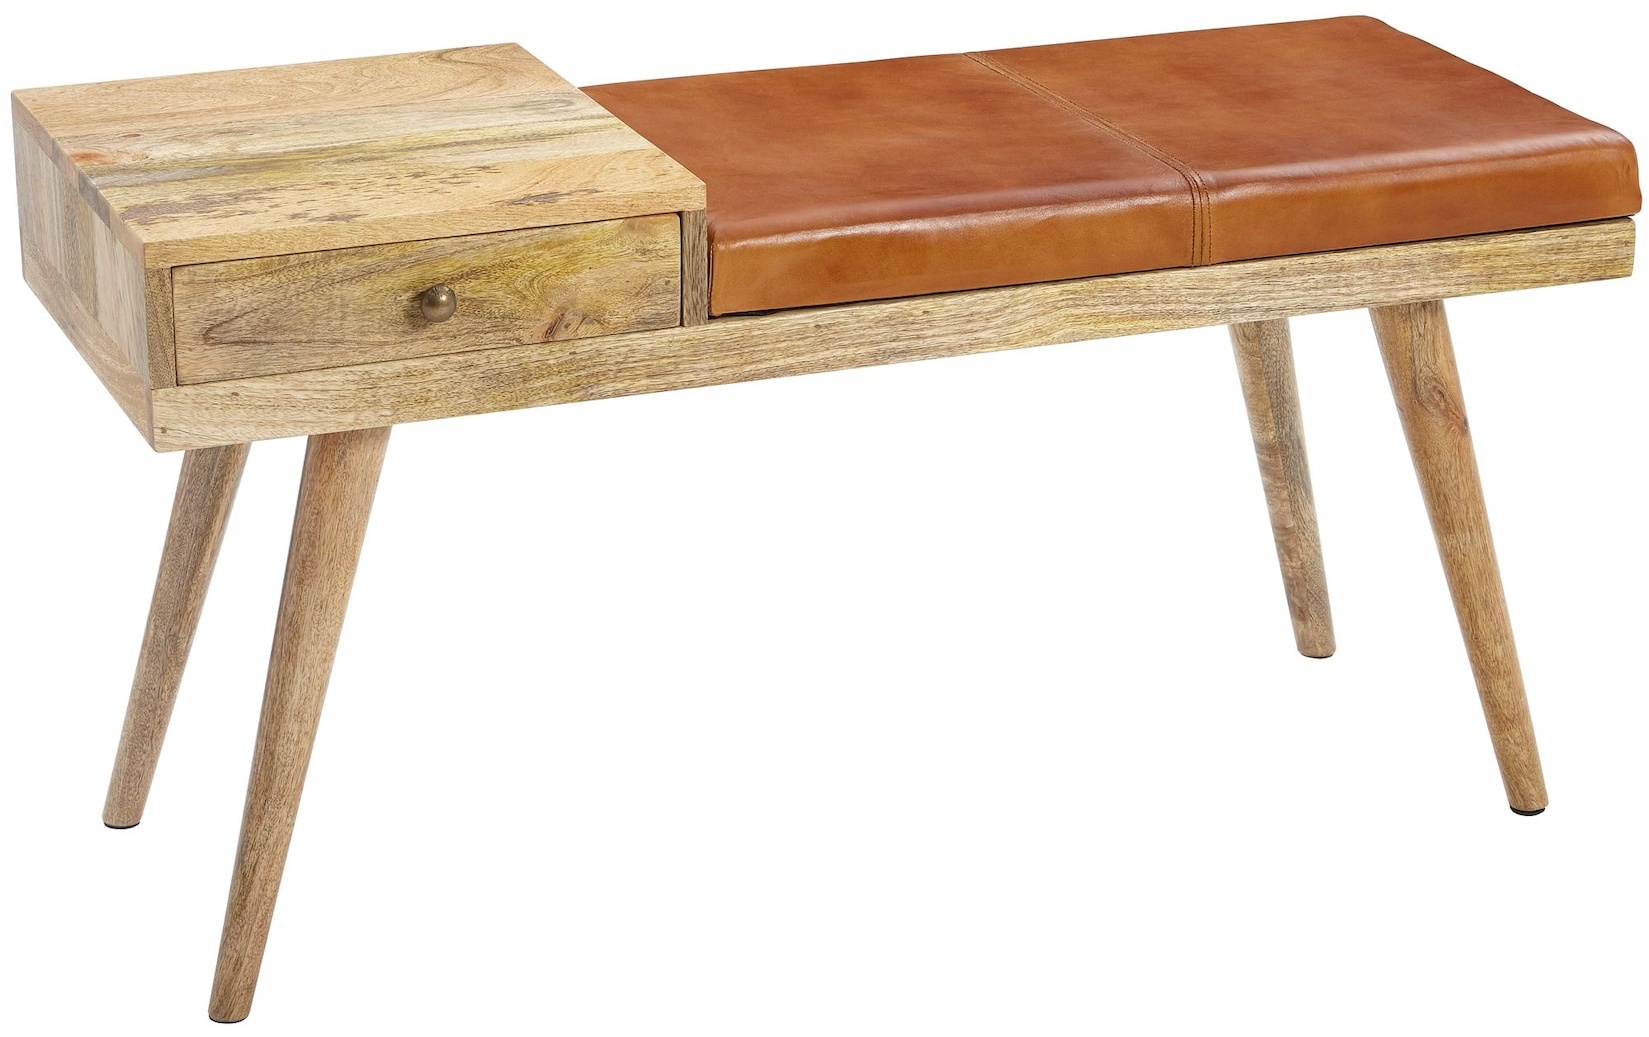 KADIMA DESIGN Retro-Stil Sitzbank: Stauraum, Ziegenleder-Bezug, 100x52x38 cm, Schublade, Anti-Rutsch-Noppen.